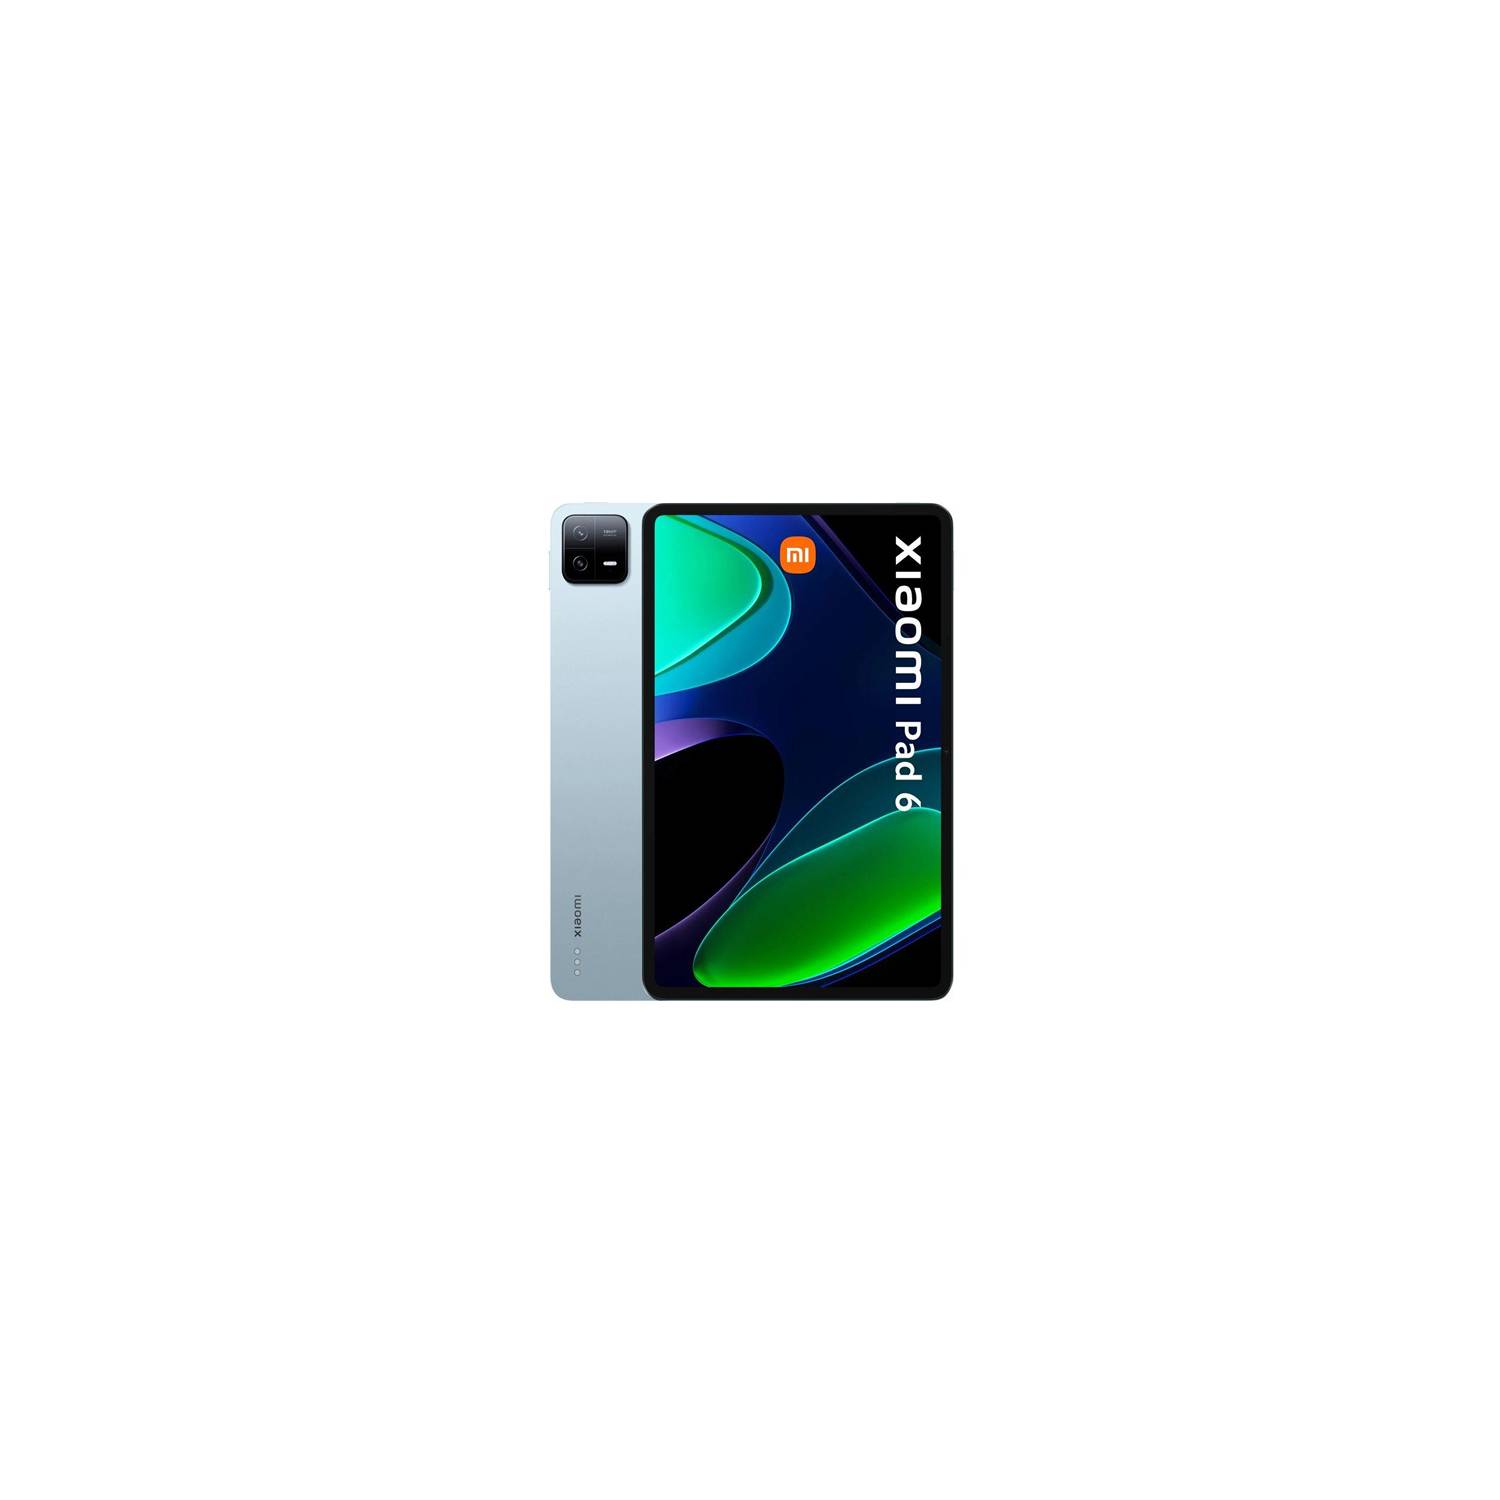 Tablet Xiaomi Mi PAD 6 Mist Blue 8GB RAM - 256GB ROM Version Global XIAOMI